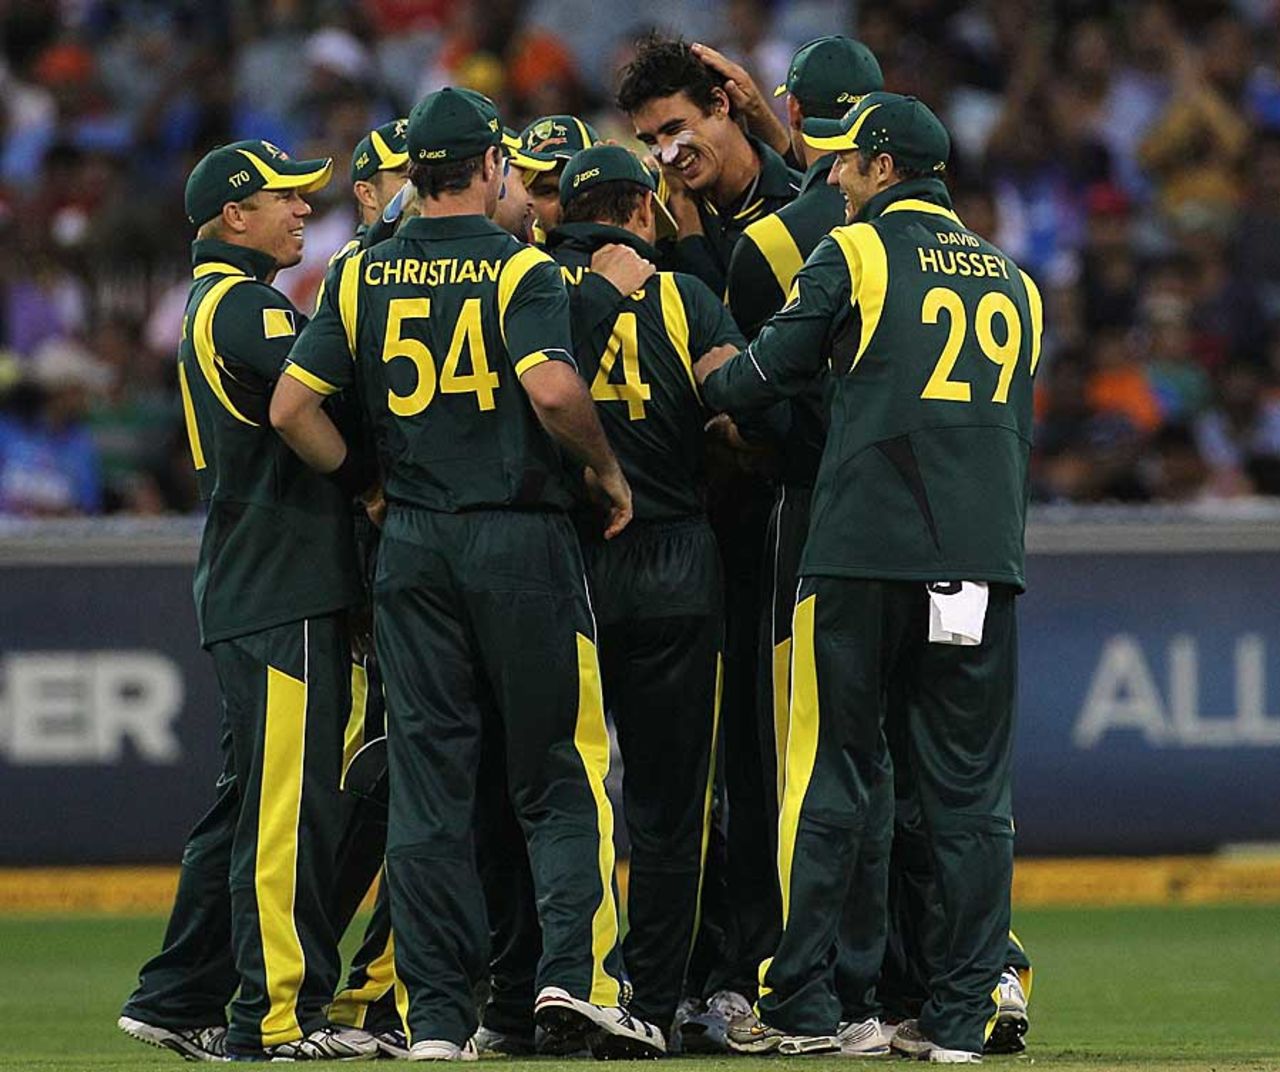 Mitchell Starc dismissed India's openers, Australia v India, CB Series, 1st ODI, Melbourne, February 5, 2012